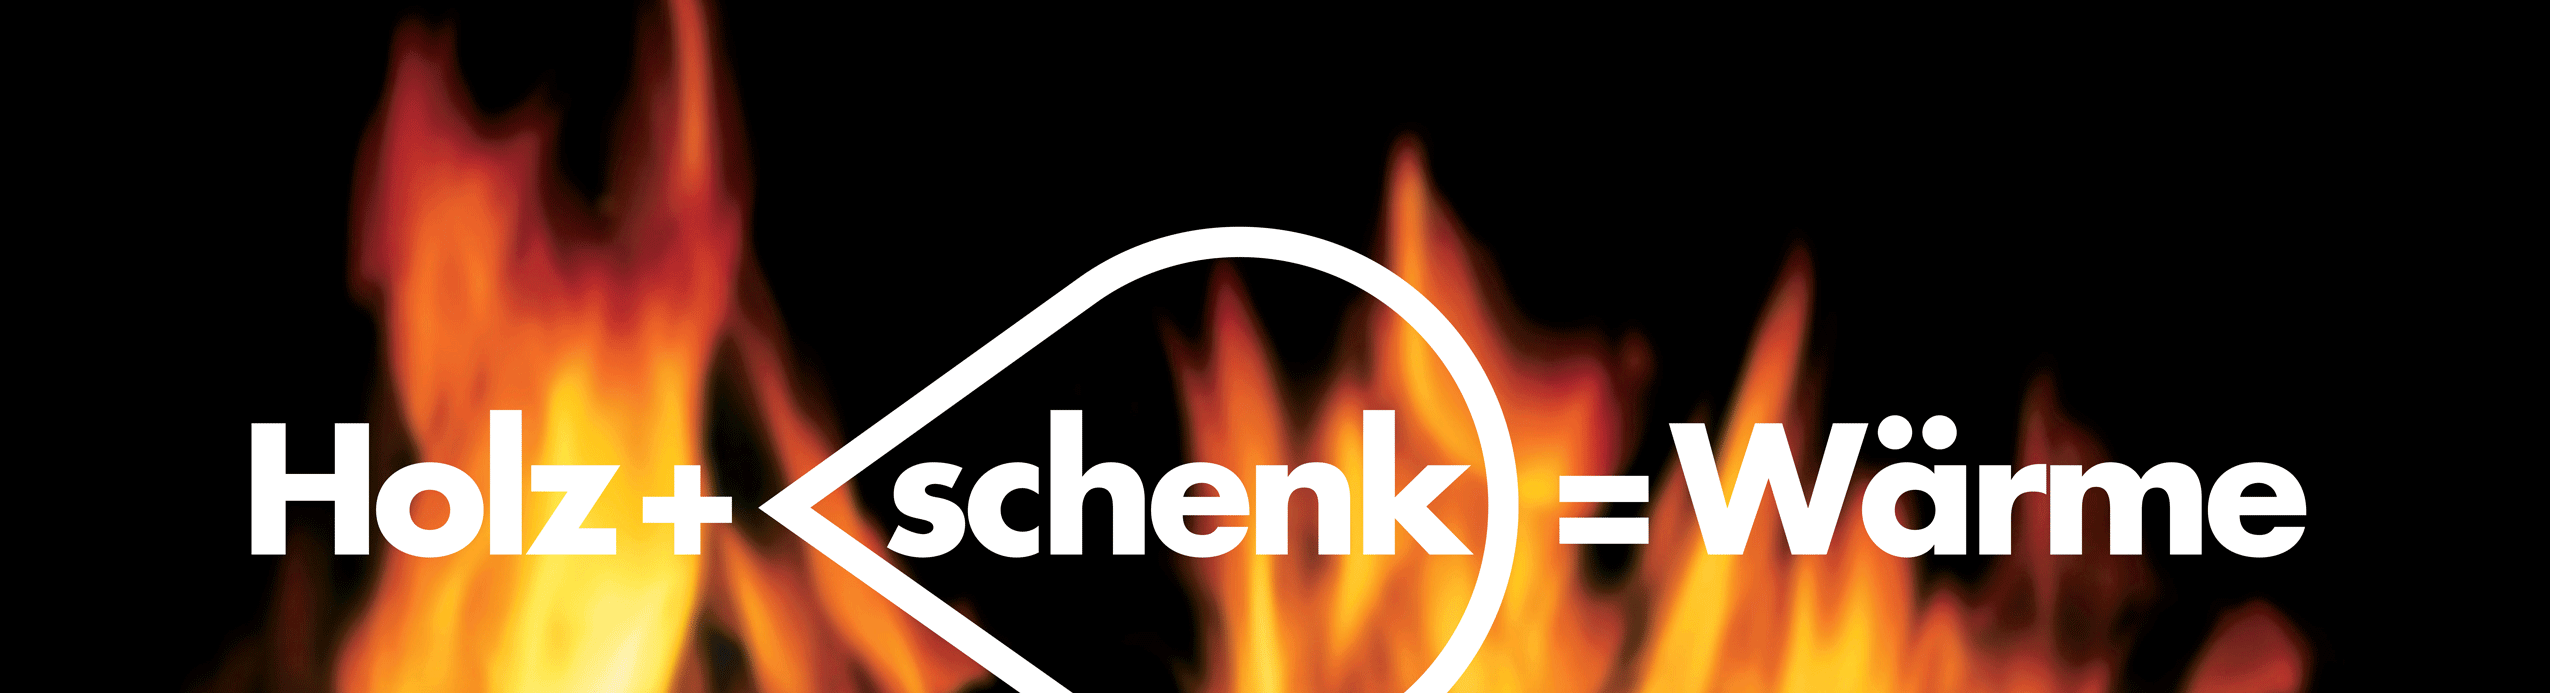 Holz + Schenk = Wärme